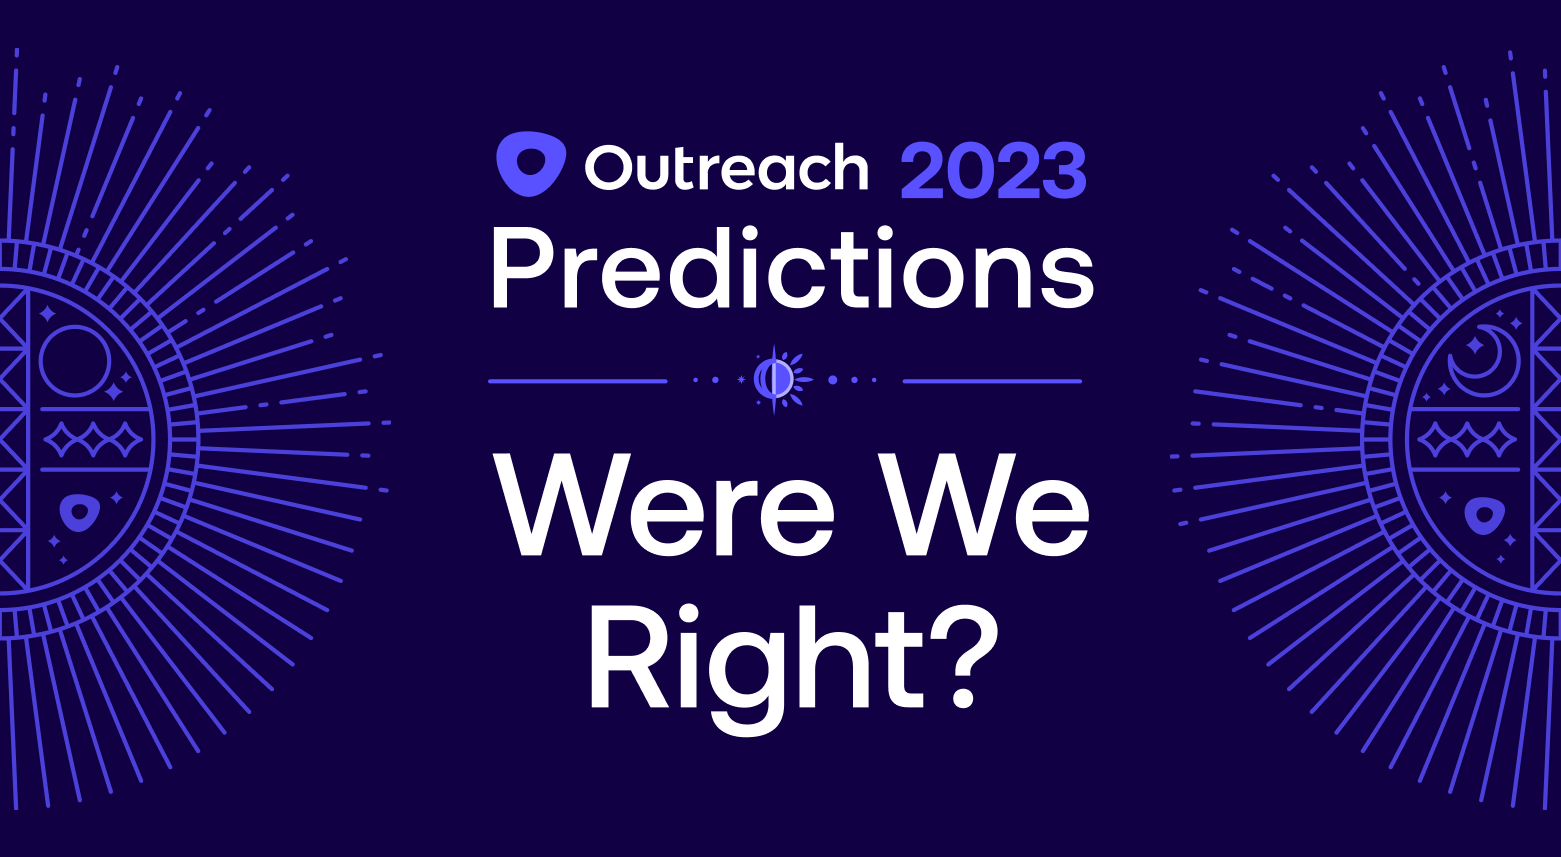 2023 prediction graphic